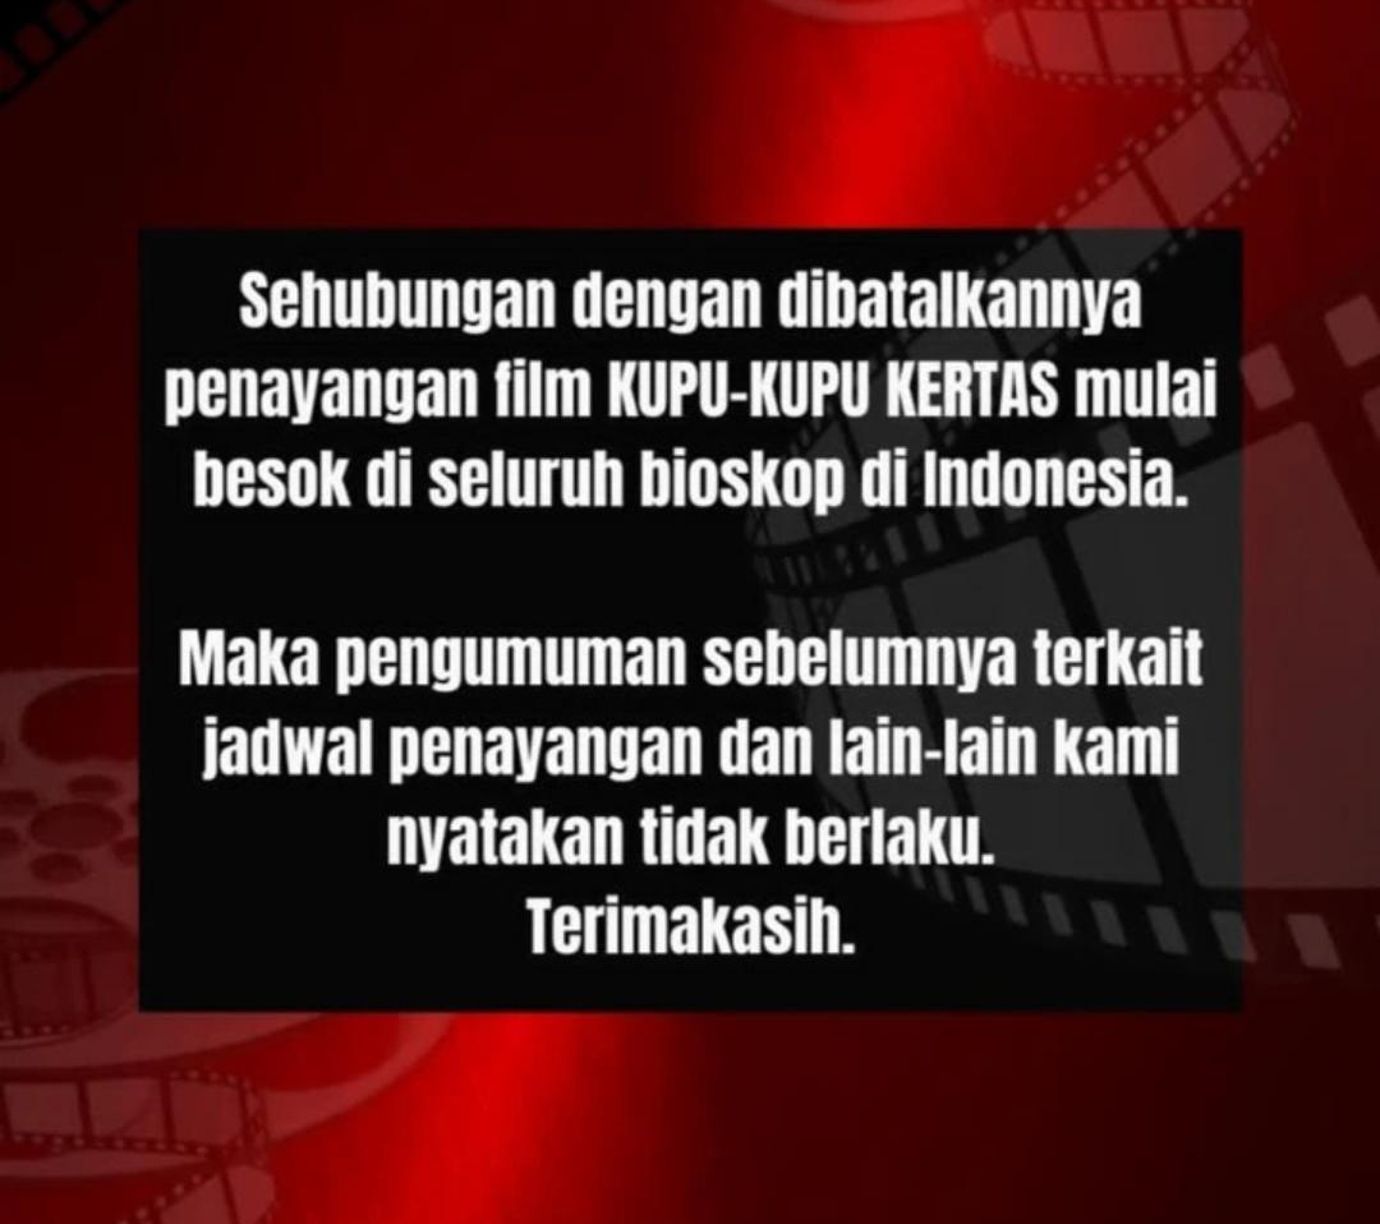 Pengumuman pembatalan pemutaran film Kupu Kupu Kertas di seluruh bioskop di Indonesia